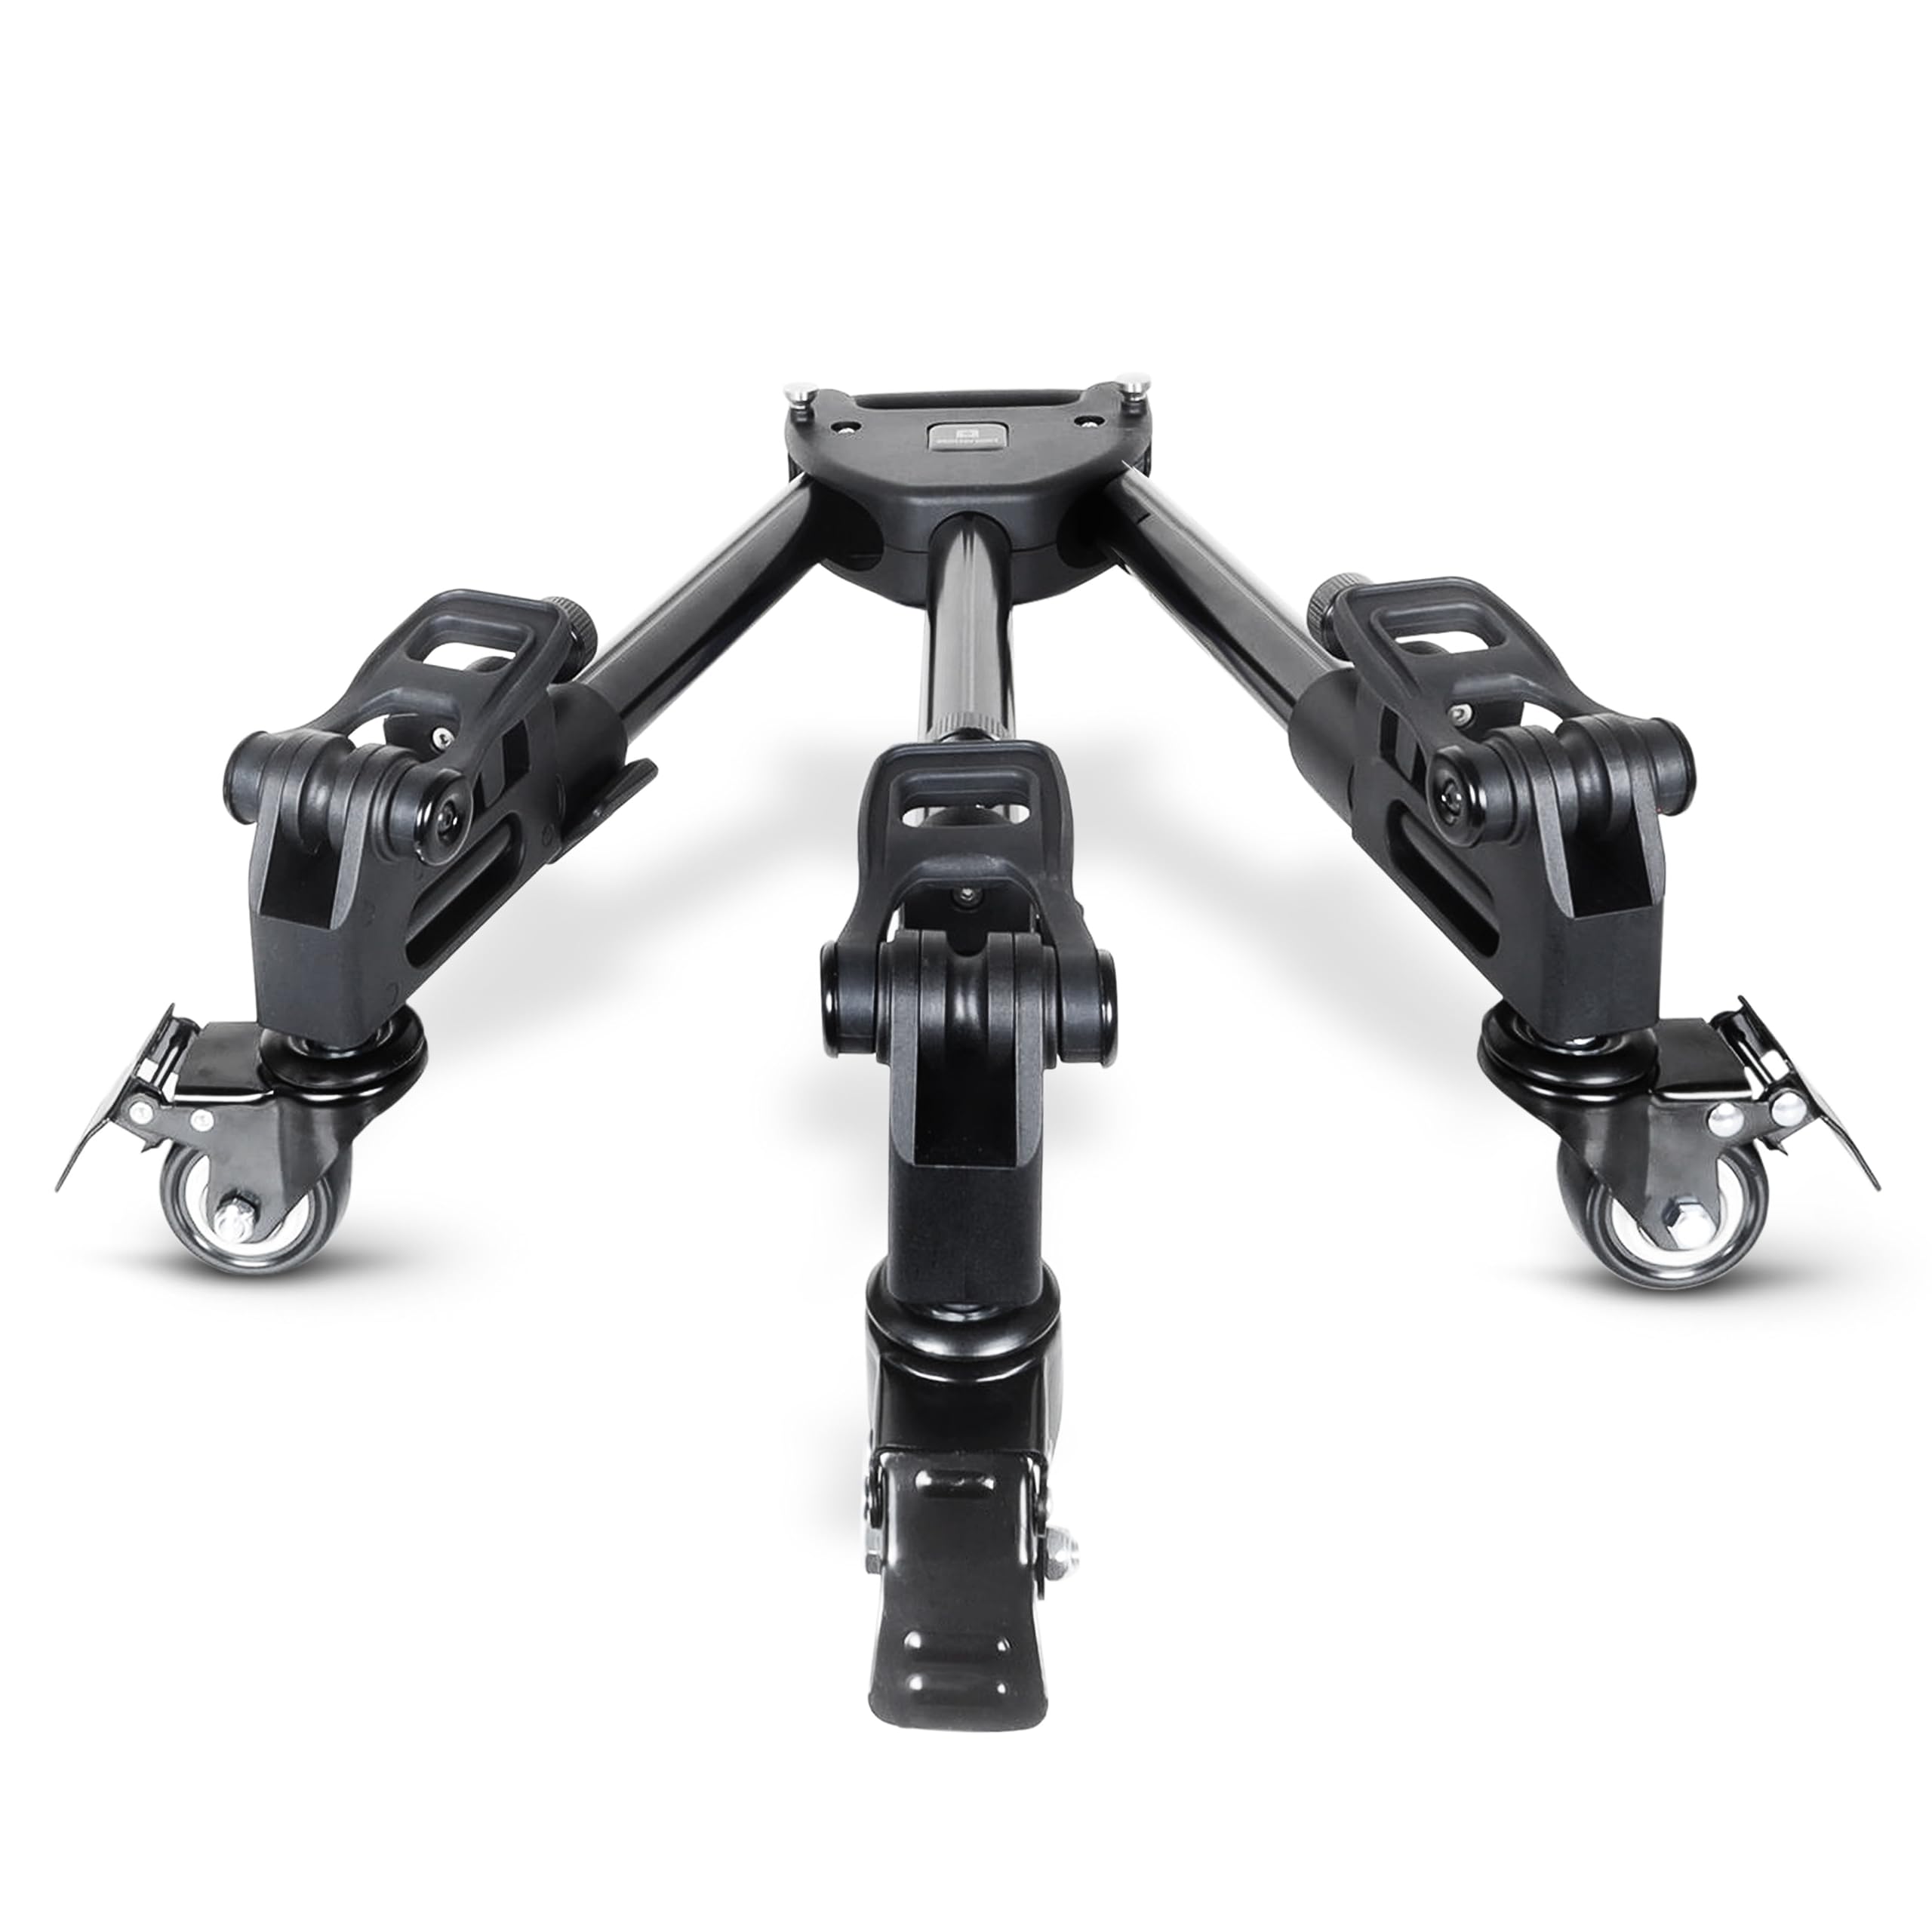 Matterport Stativ mit Rädern und Türstopper-Set für Kamerastative und kompatibel mit Pro2- oder Pro3-3D-Digitalkameras